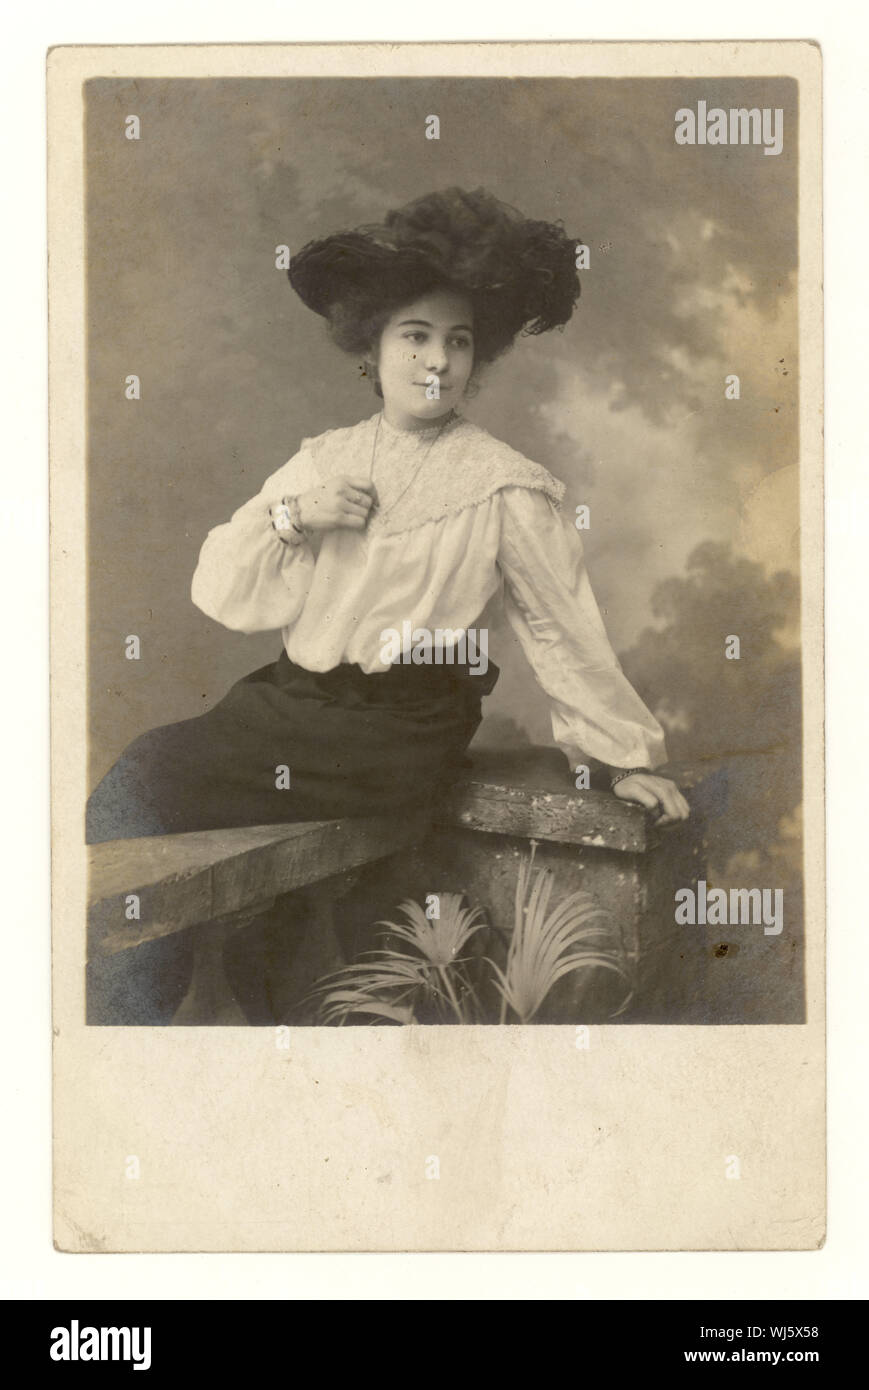 Au début des années 1900, la carte postale de portrait de studio de jolie jeune femme glamour portant un chapeau avec une plume en elle, blouse de dentelle, manches lâches, jupe vers 1904, Royaume-Uni Banque D'Images